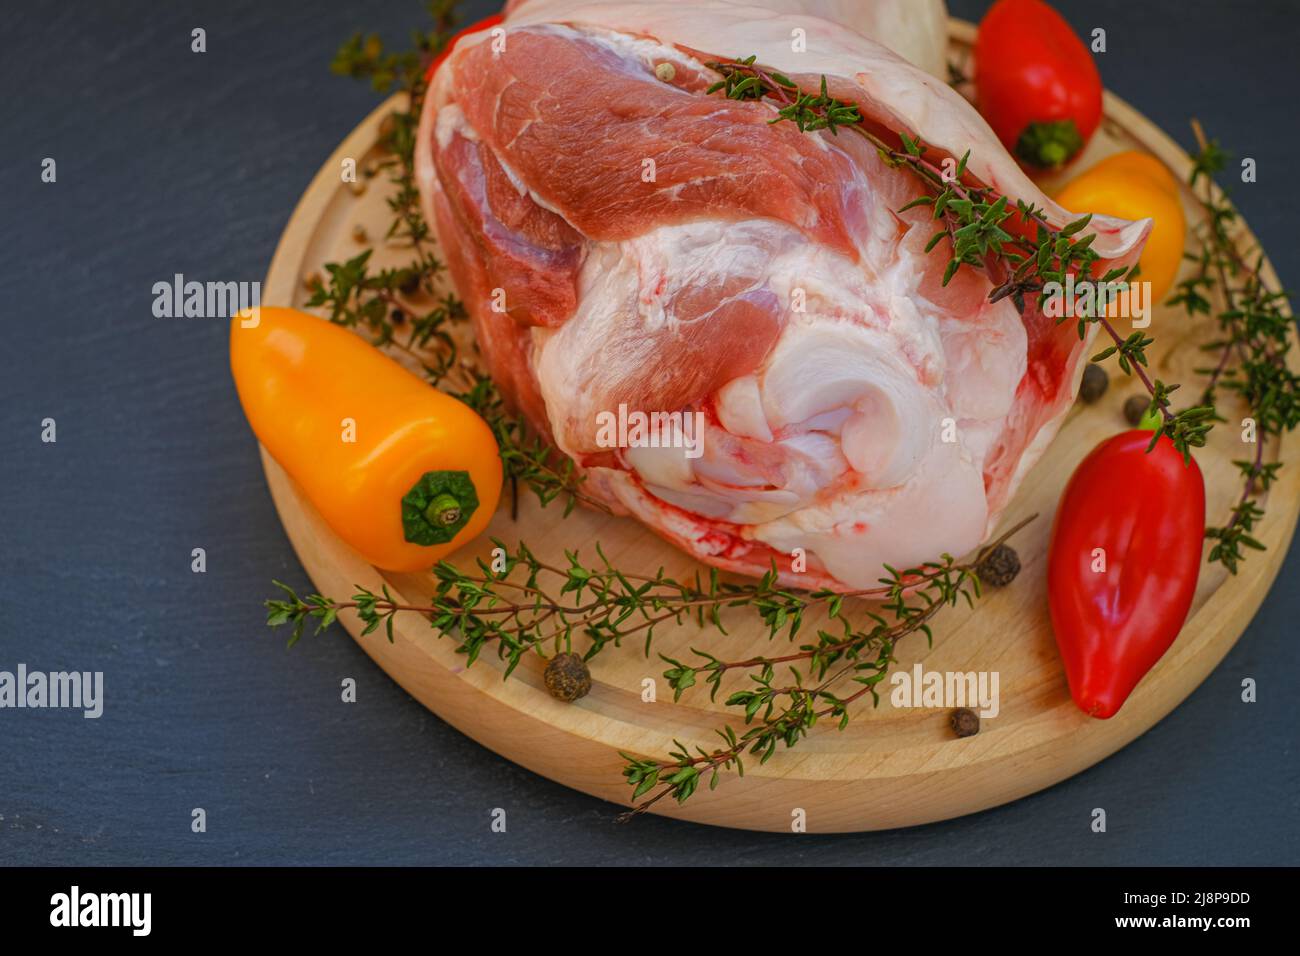 Carne de cerdo en el hueso, pimienta dulce fresca y hierba de tomillo en una tabla redonda sobre fondo de pizarra. Productos cárnicos. Foto de stock